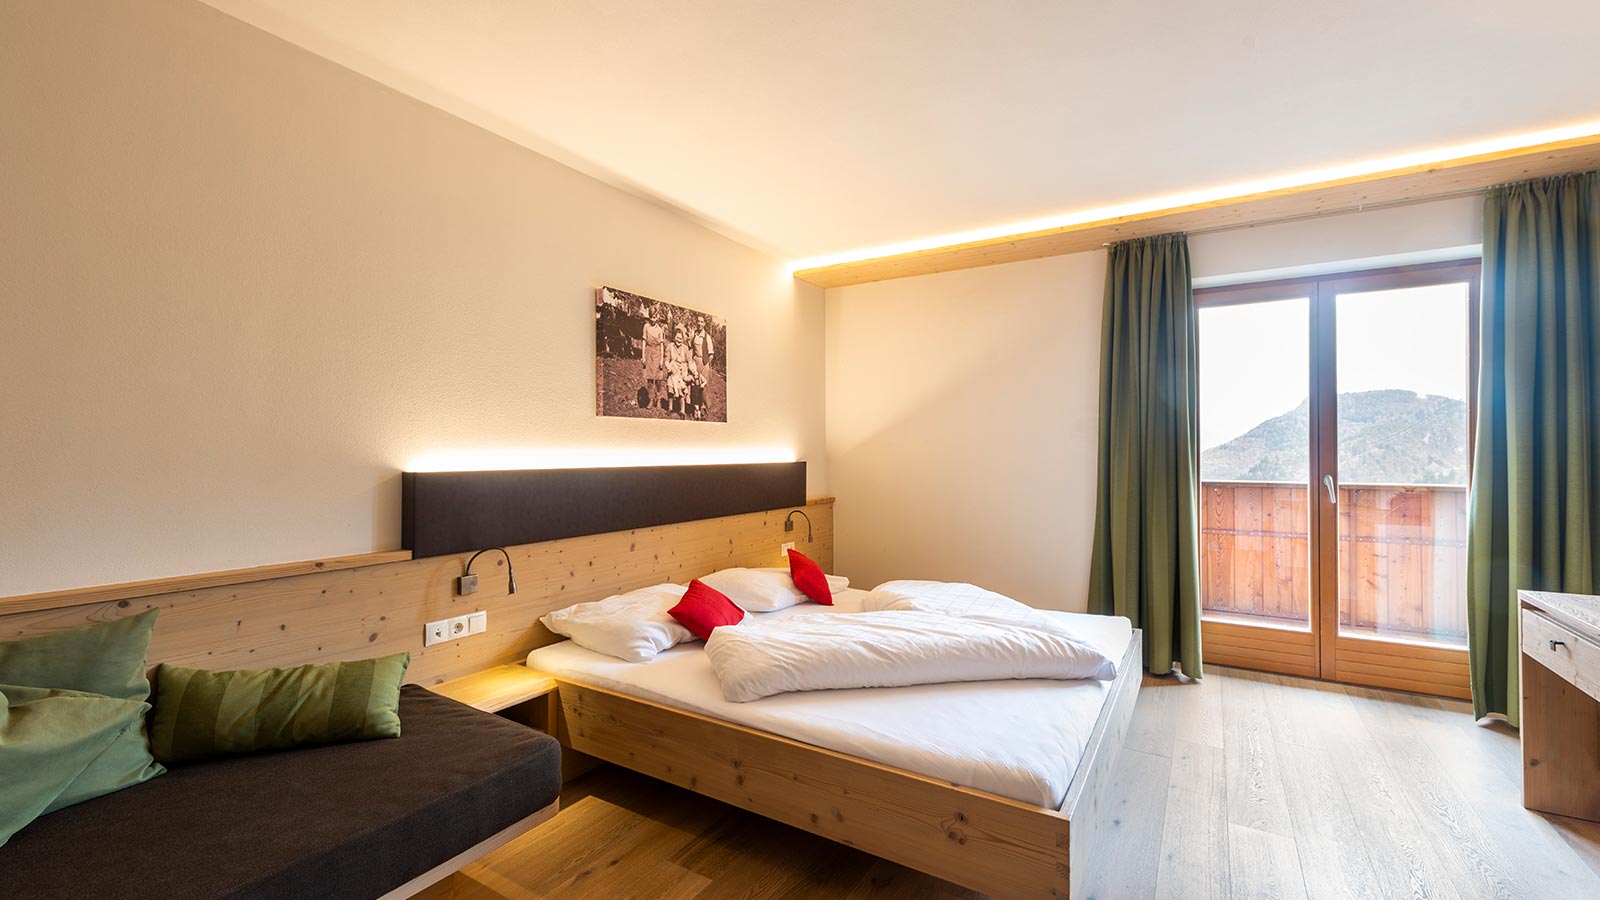 La camera arredata in stile alpino e rivestita in legno dell'Hotel a Tesimo